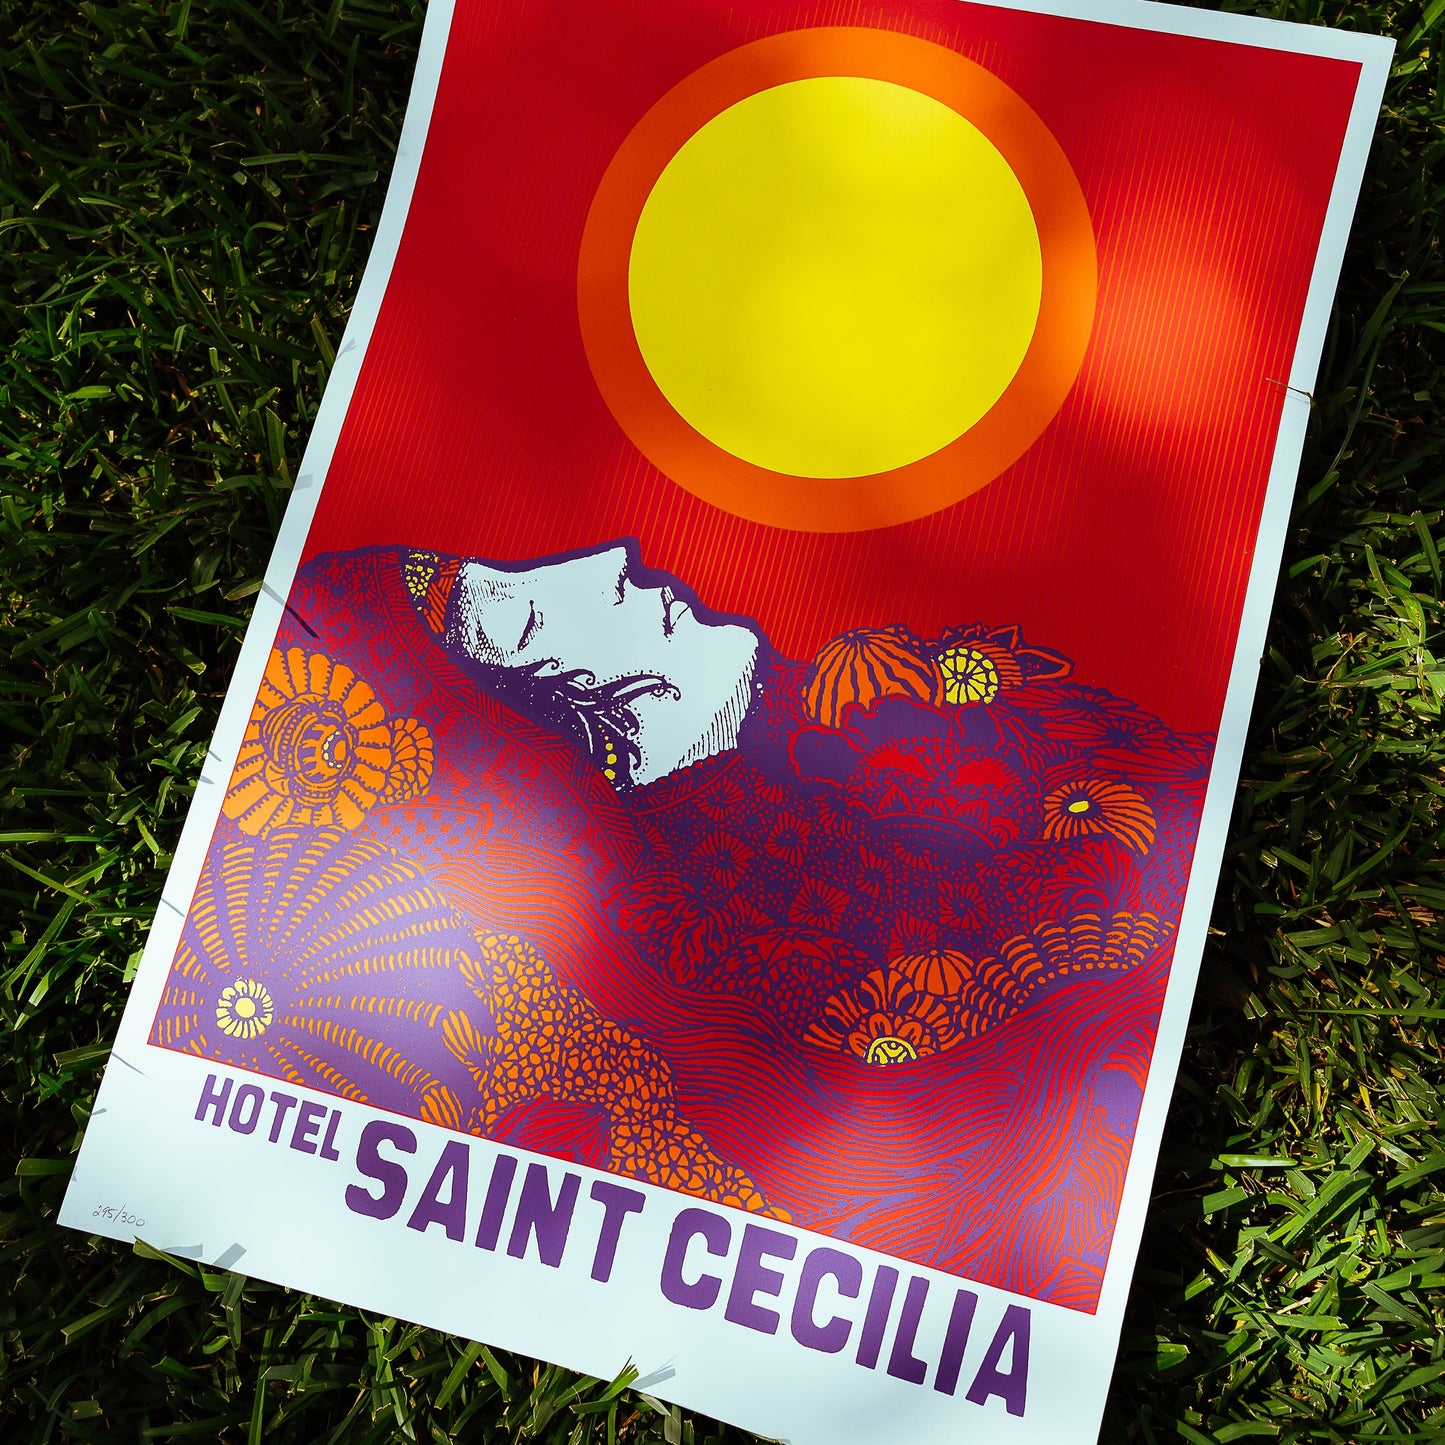 Hotel Saint Cecilia Poster